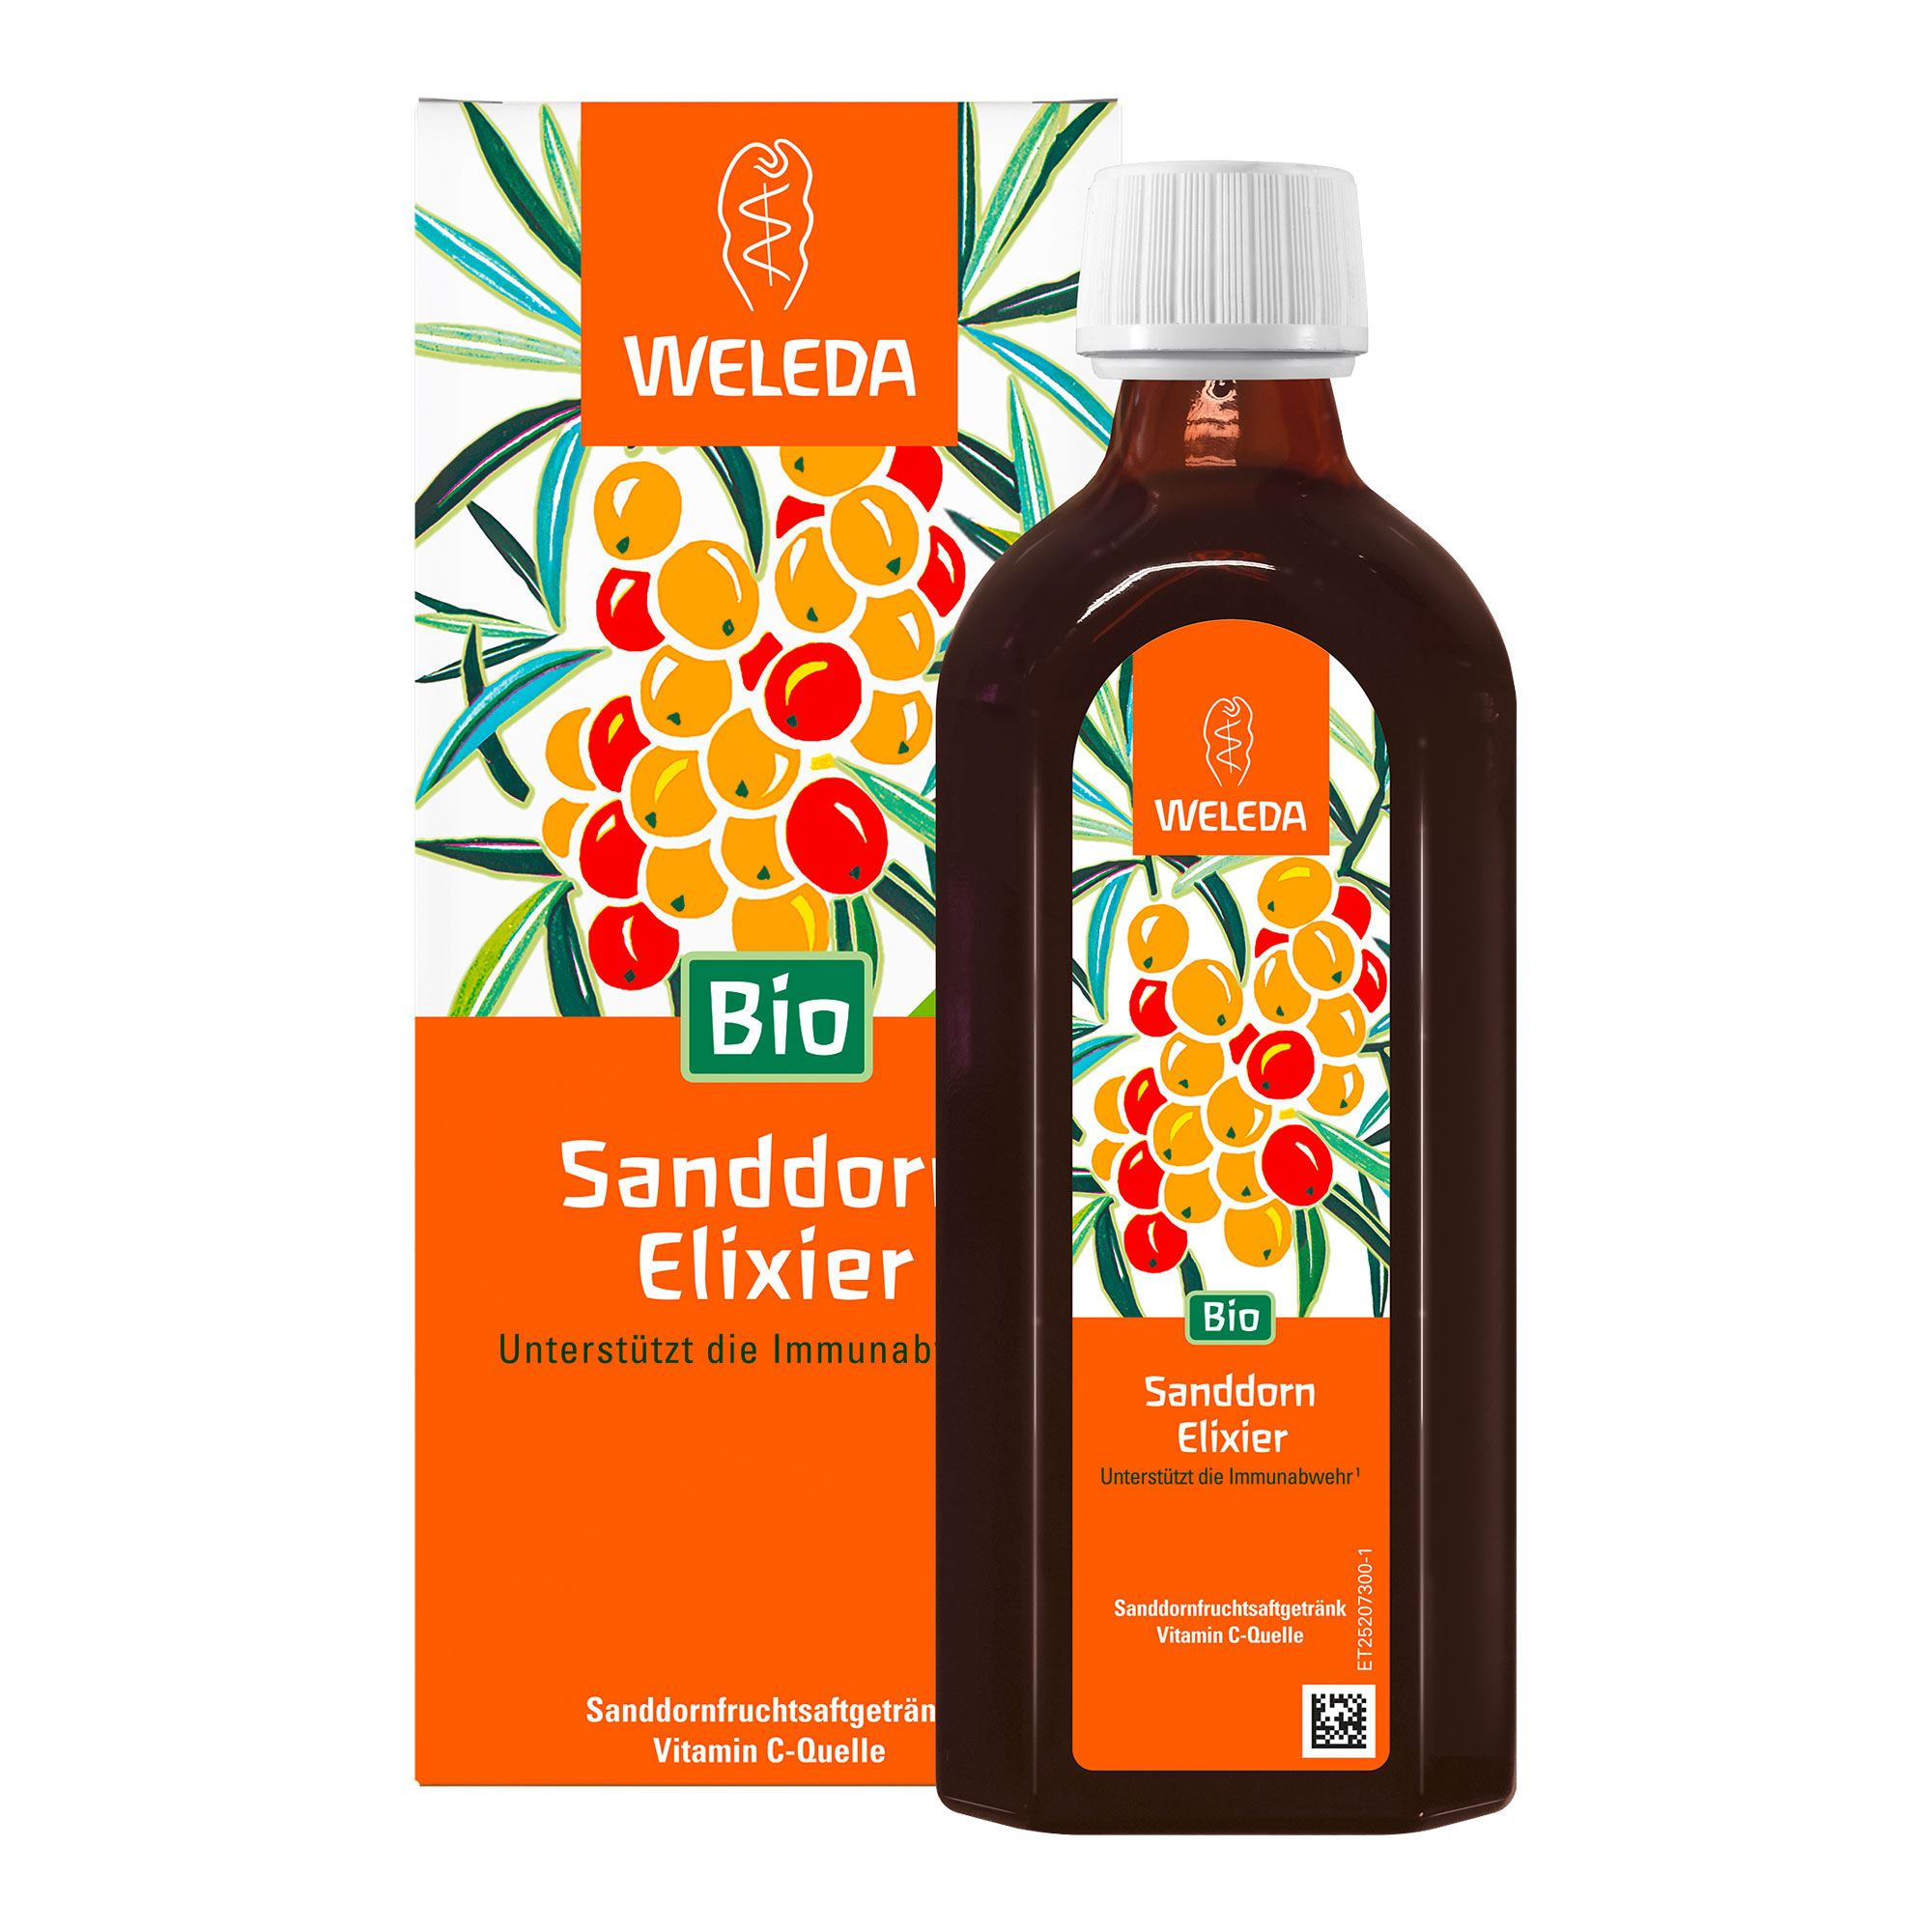 Sanddorn Elixier hilft gegen Müdigkeit und Erschöpfung, unterstützt mit Vitamin C die Immunabwehr und schützt die Zellen vor dem antioxidativem Stress - angenehm gesüßt mit Bio Rohrzucker und H